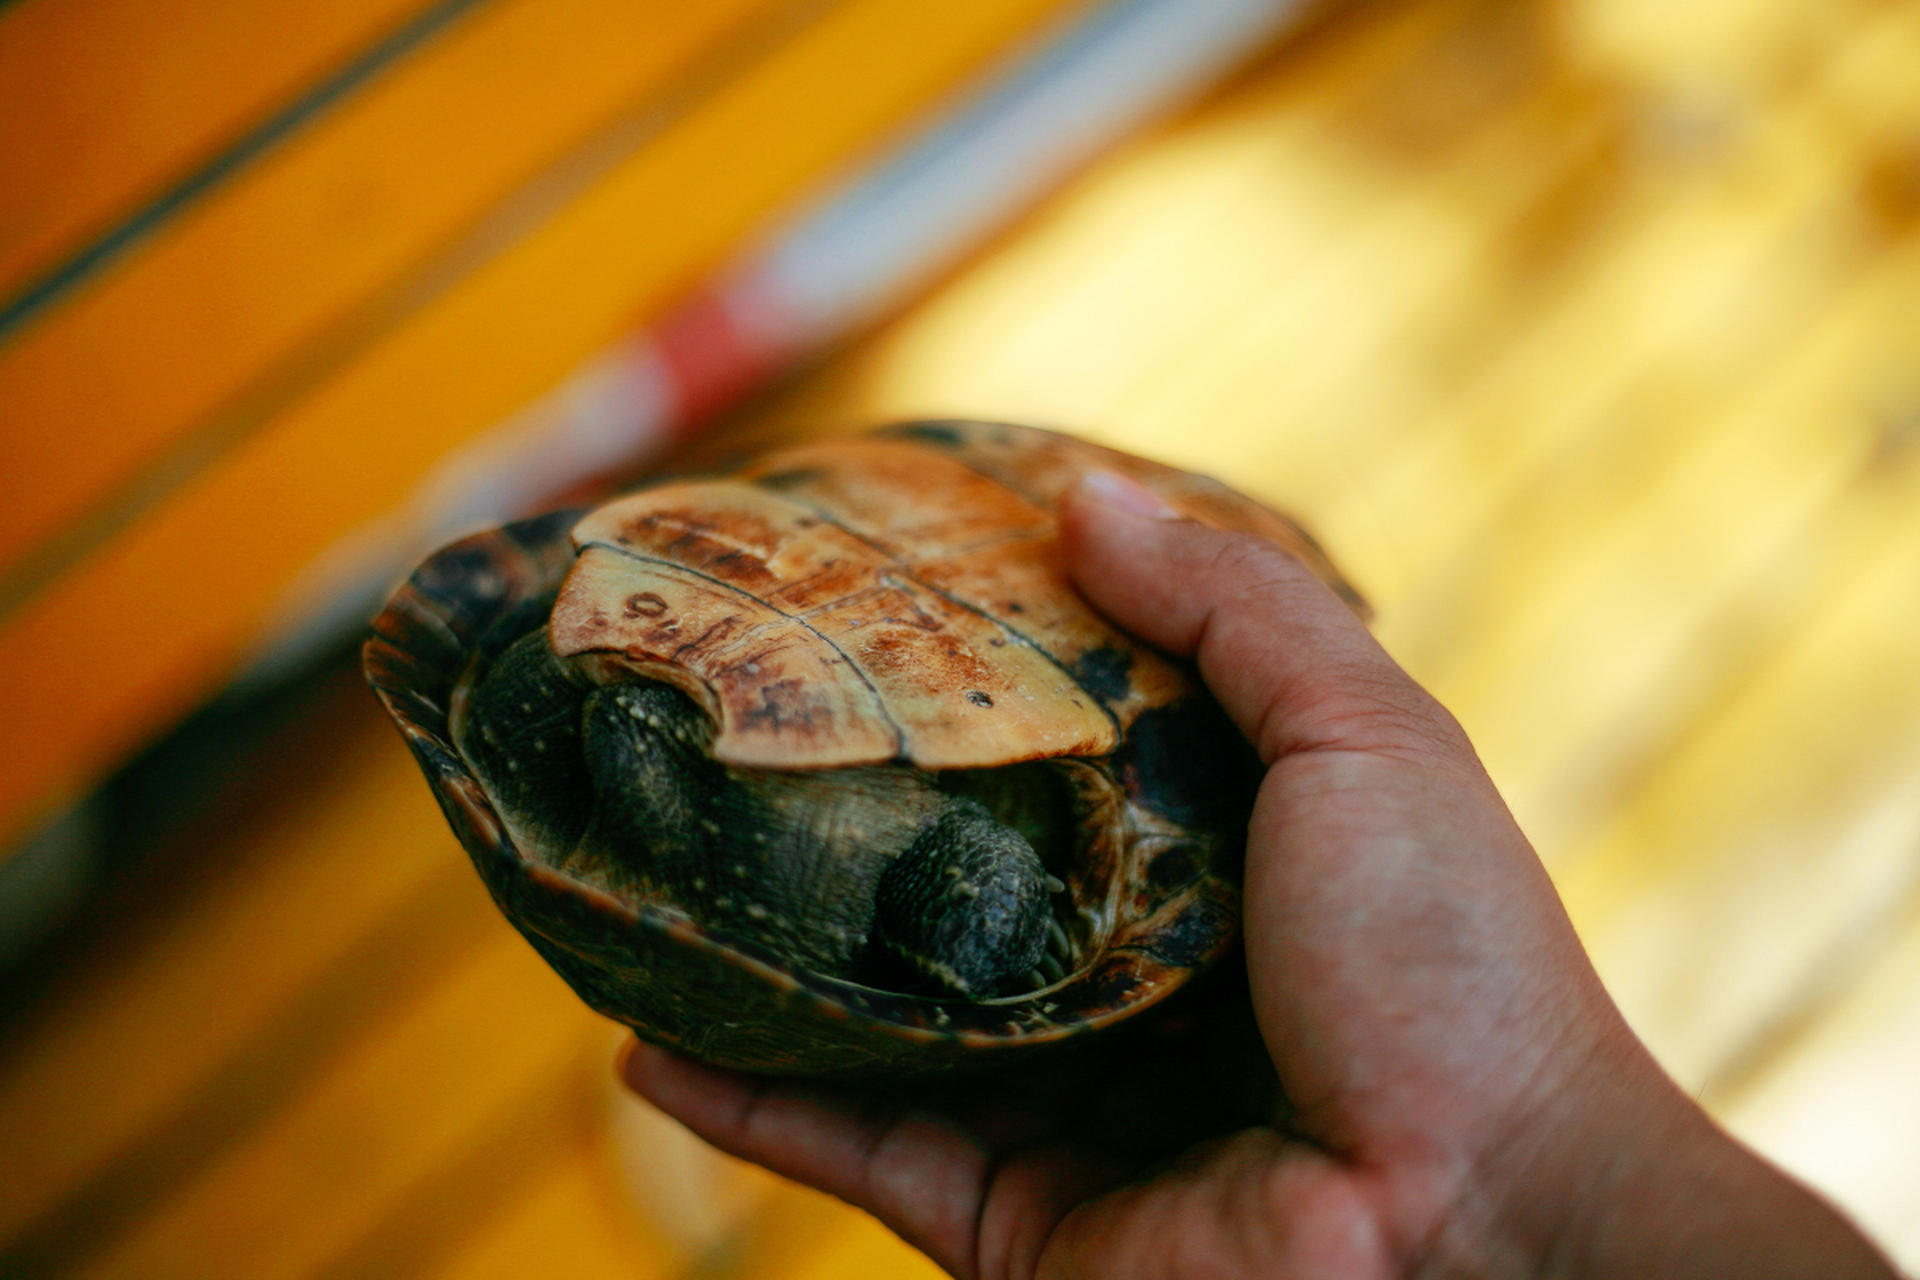 乌龟换壳是生长的自然现象,表现为背壳裂纹,行动迟缓,食欲变化等征兆